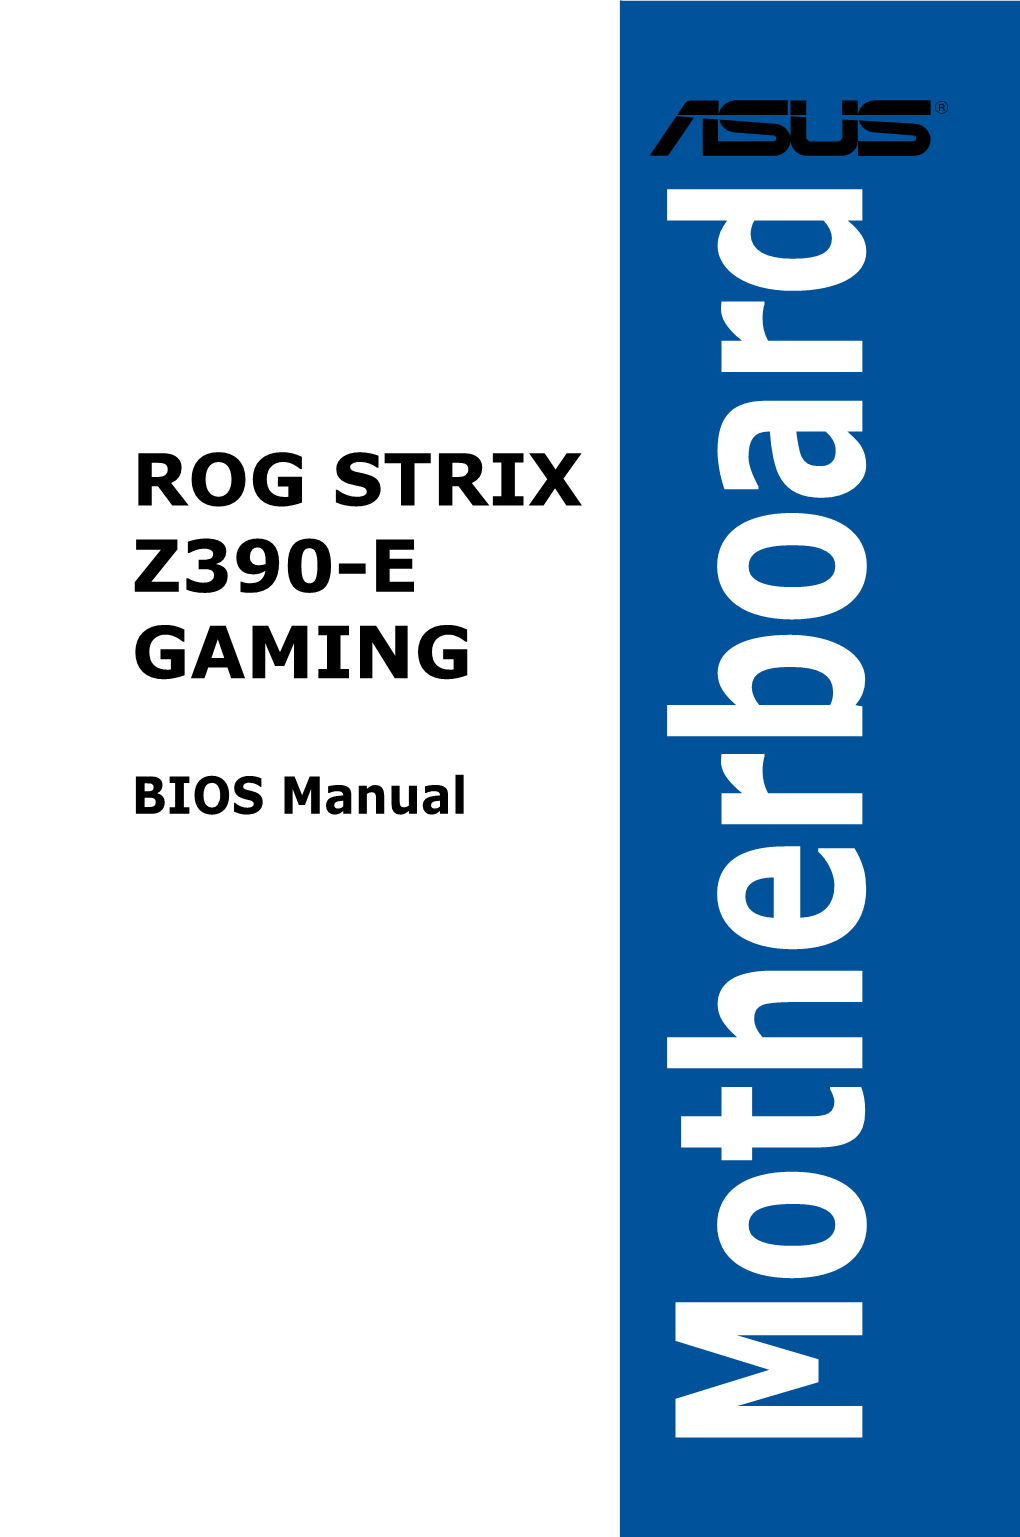 Rog Strix Z390-E Gaming